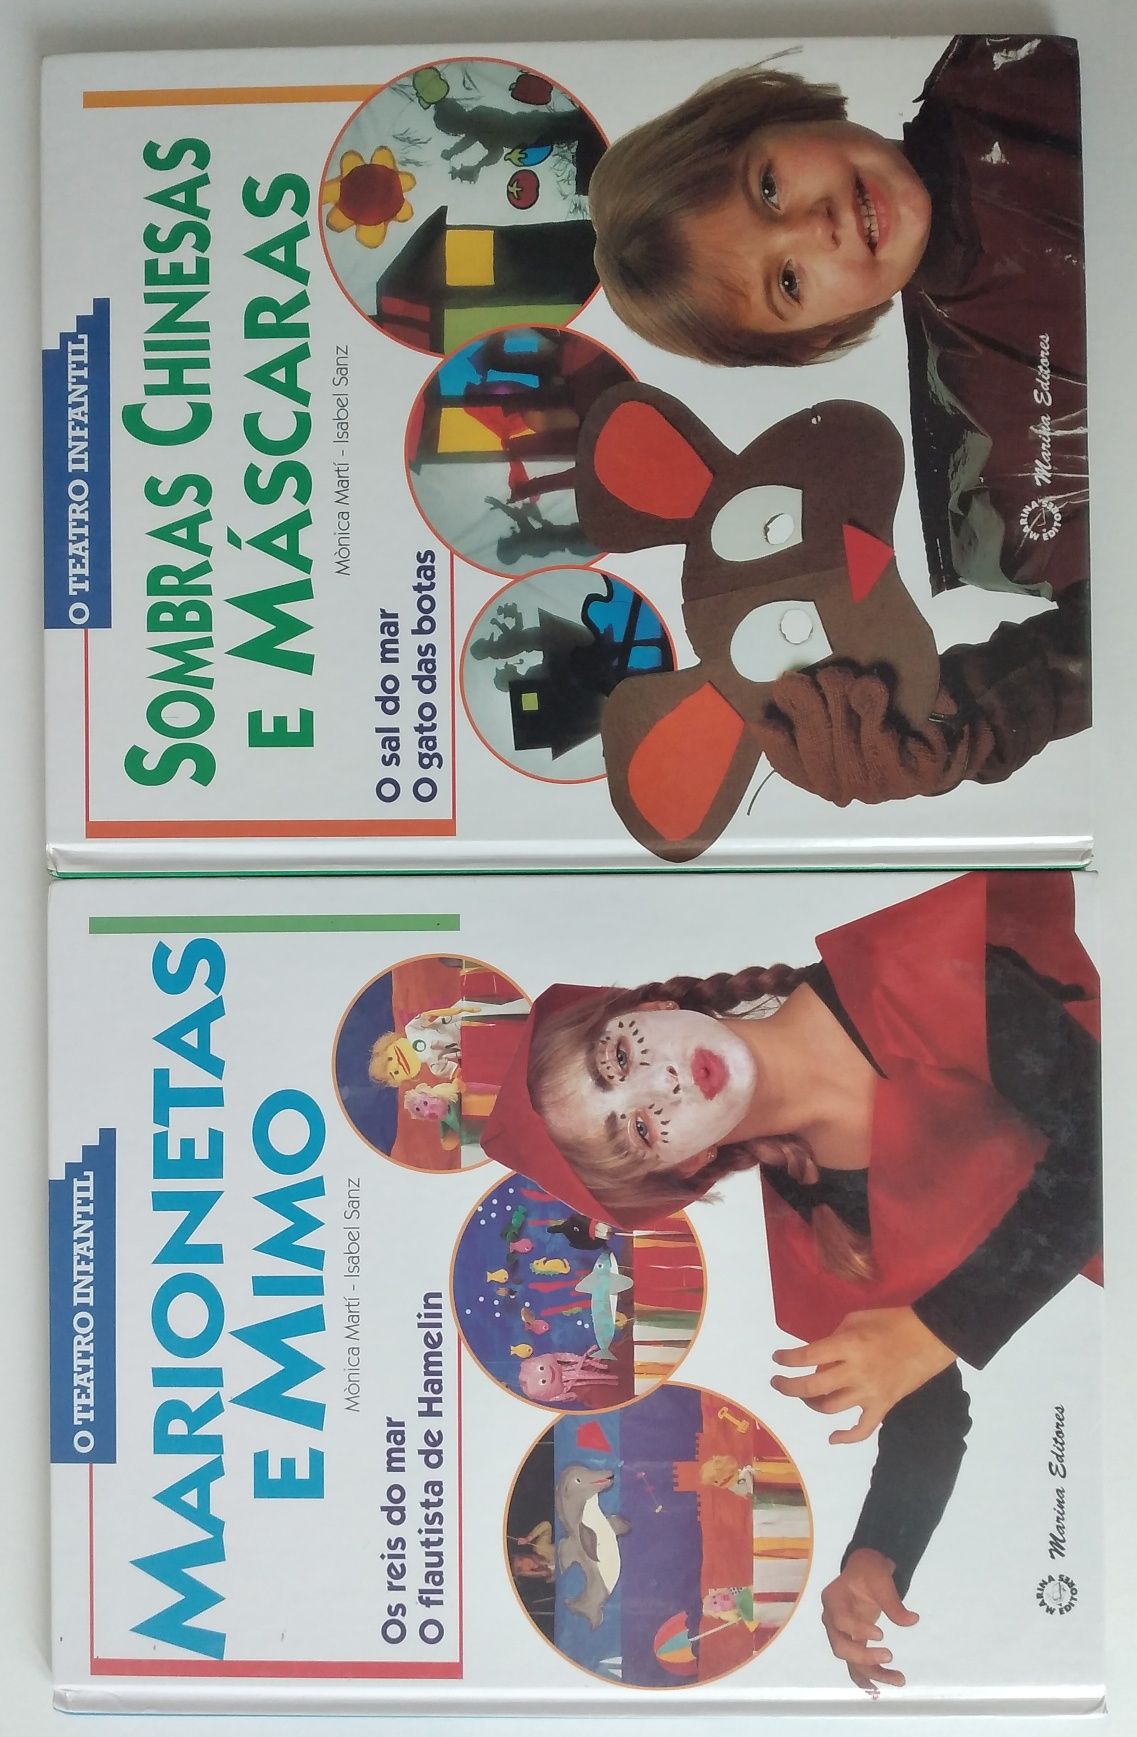 Teatro infantil - 4 livros e 2 estojos com 4 cd's todos novos